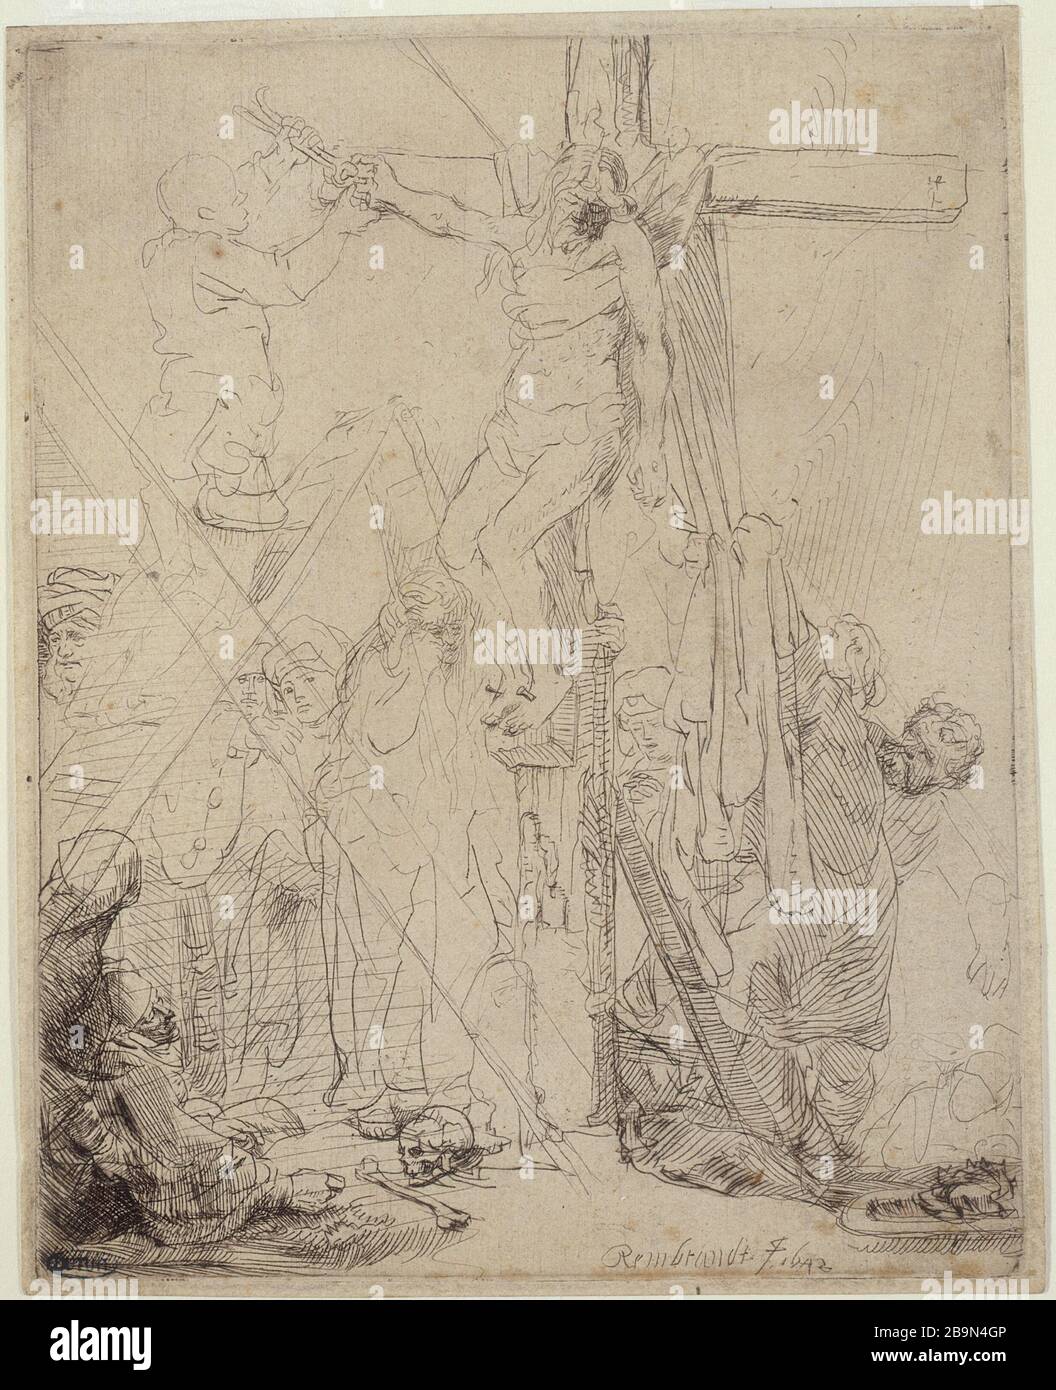 CROSS DOWNHILL Harmensz Van Rijn Rembrandt (1606-1669). 'La Descente de croix, au trait (B 82 - état unique), 1642'. Musée des Beaux-Arts de la Ville de Paris, Petit Palais. Stock Photo